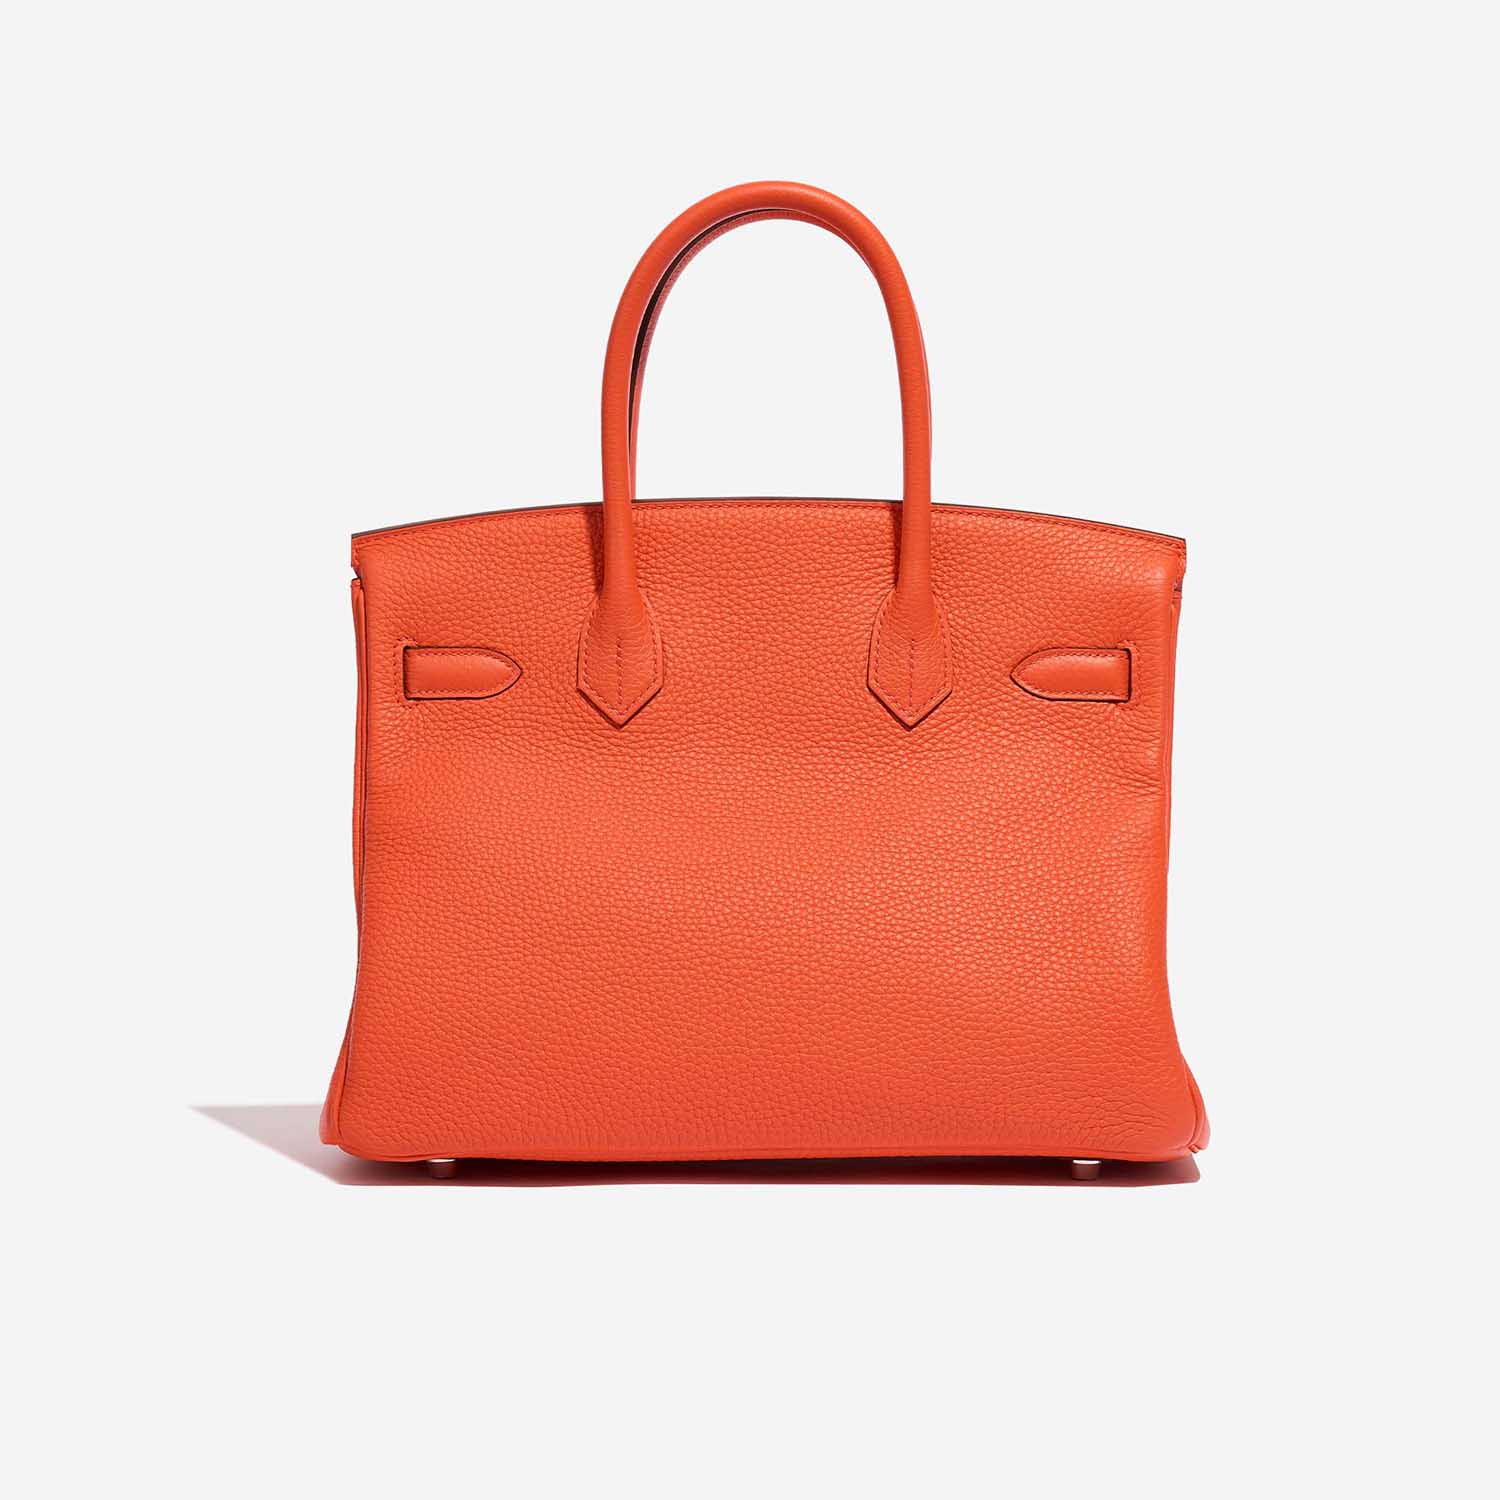 Hermès Birkin 30 OrangePoppy-Blush Back | Verkaufen Sie Ihre Designer-Tasche auf Saclab.com